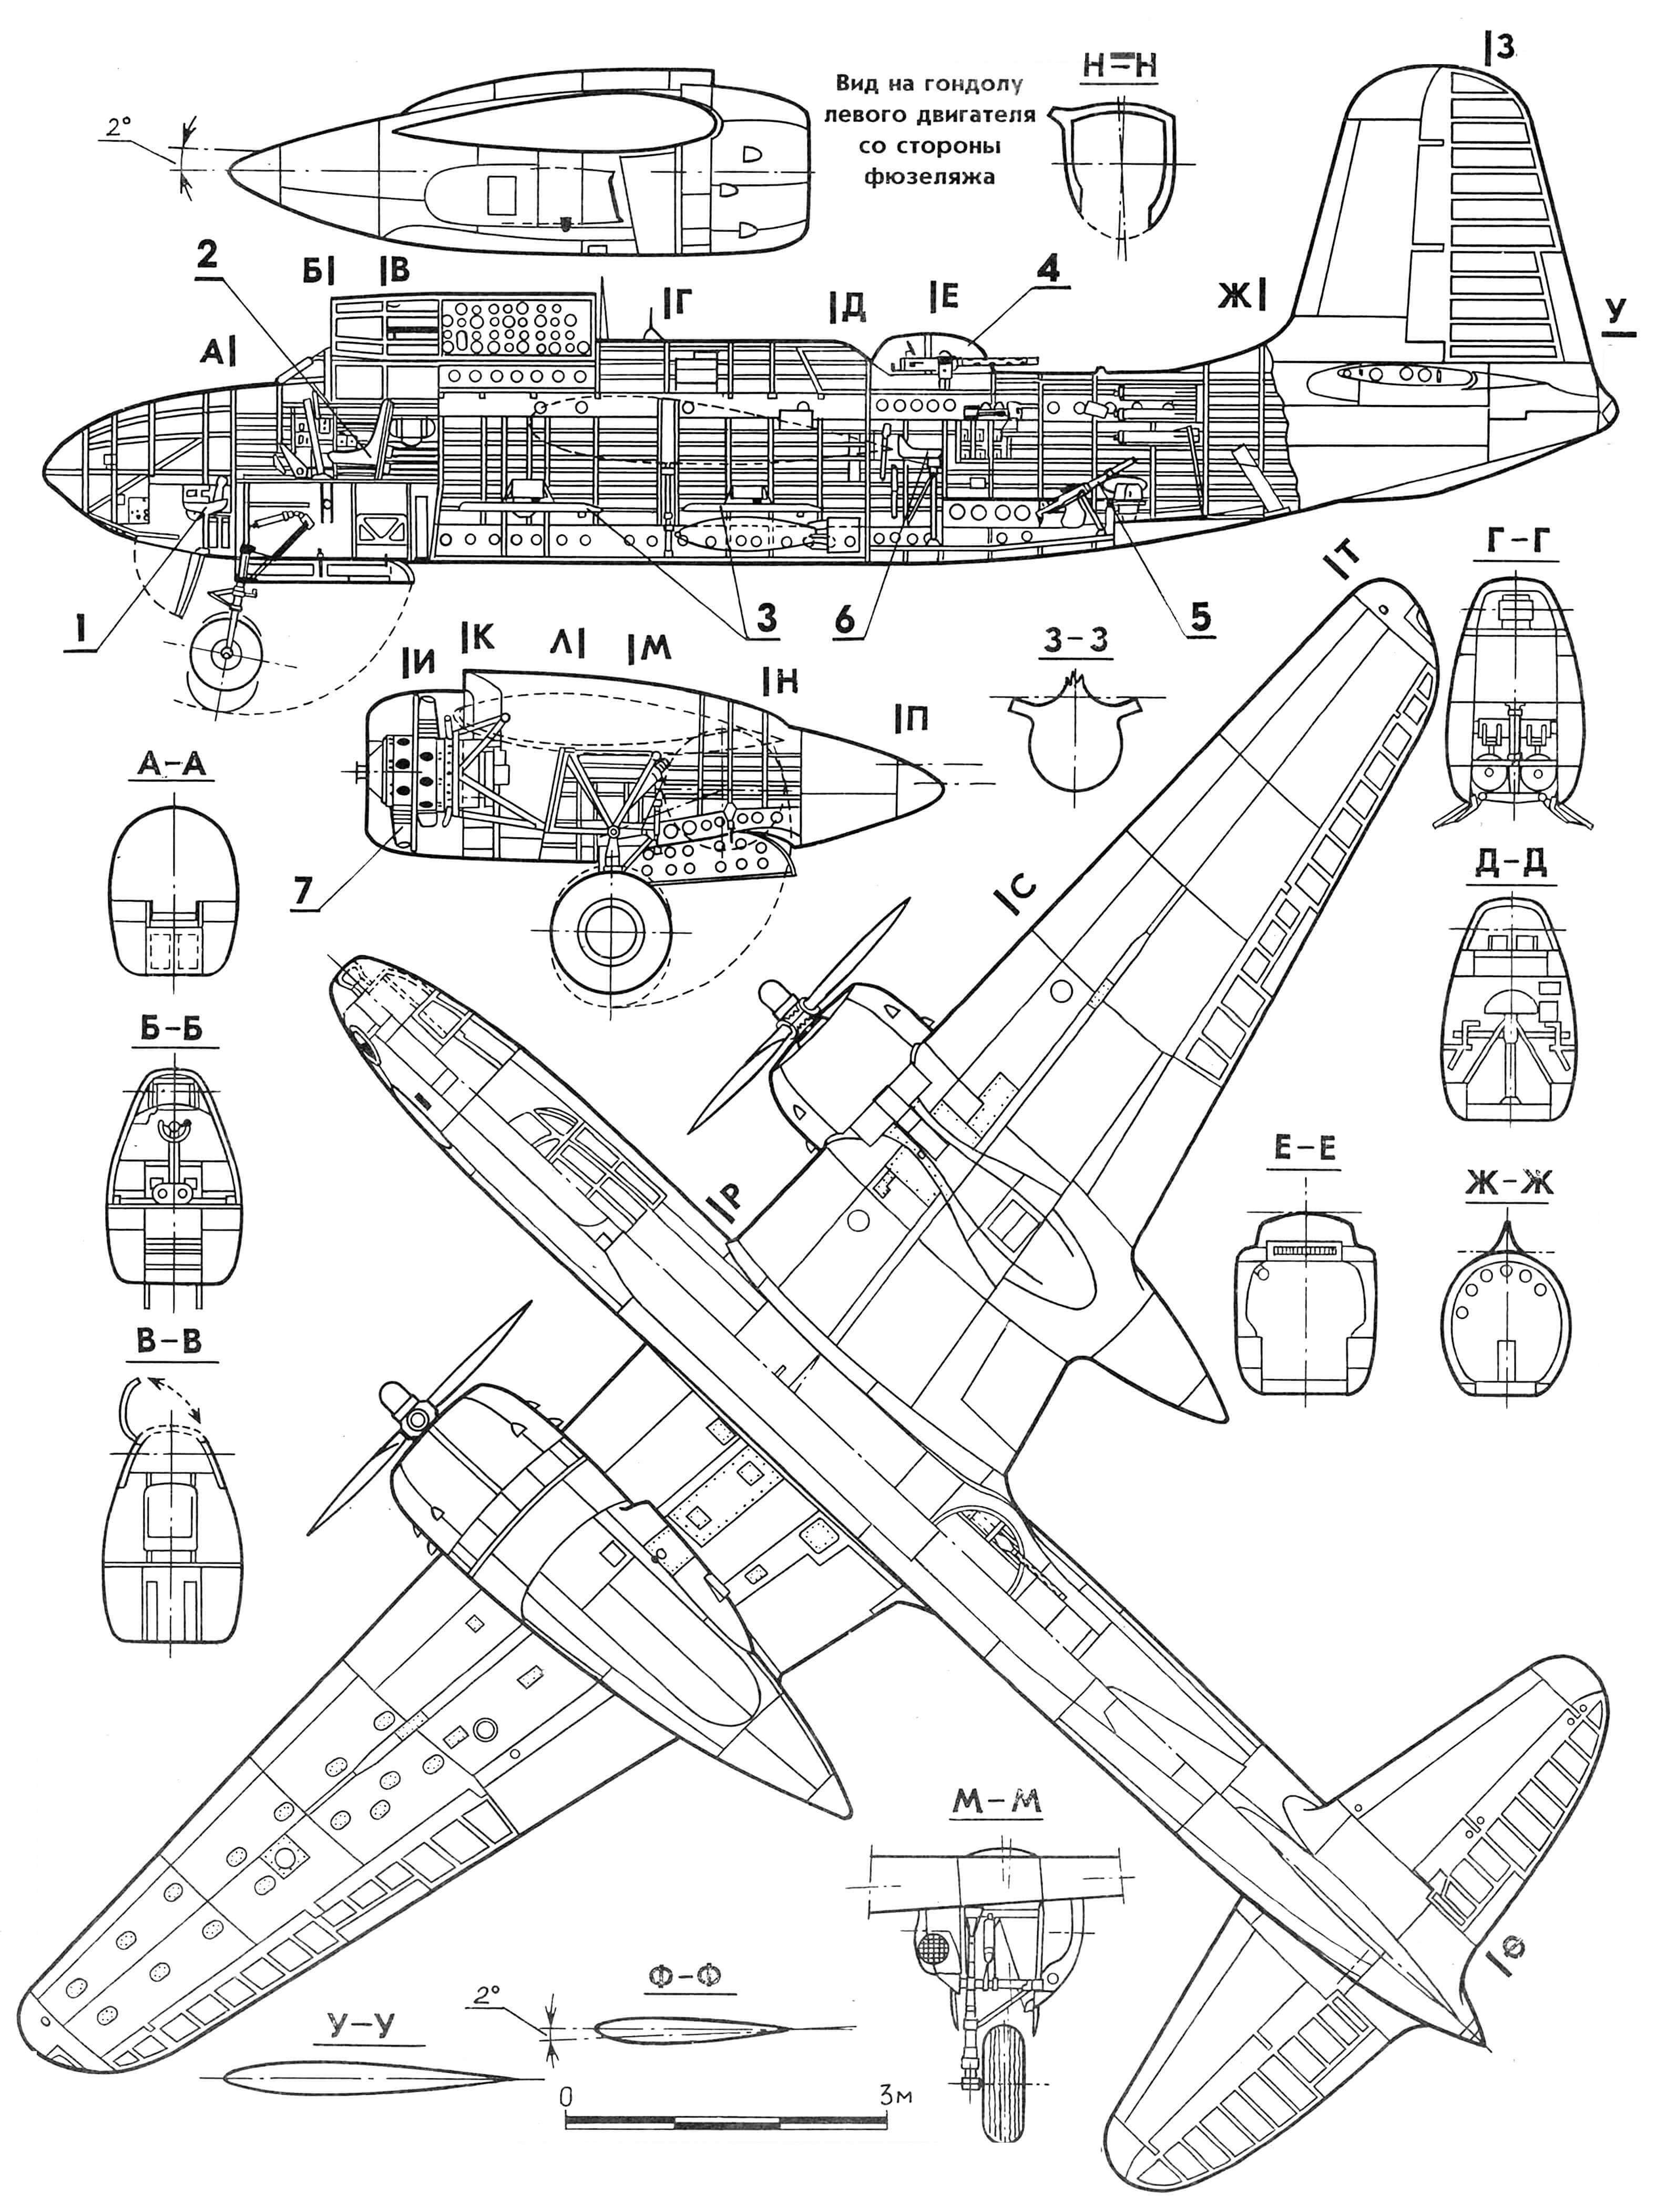 Штурмовик-бомбардировщик A-20G Havoc: 1 - сиденье штурмана, 2 - сиденье пилота, 3 - бомбодержатели, 4 - стрелковая башня, 5 - нижний пулемет, 6 - сиденье стрелка, 7 - двигатель, 8 - 20-мм пушки, 9 - подфюзеляжный топливный бак.